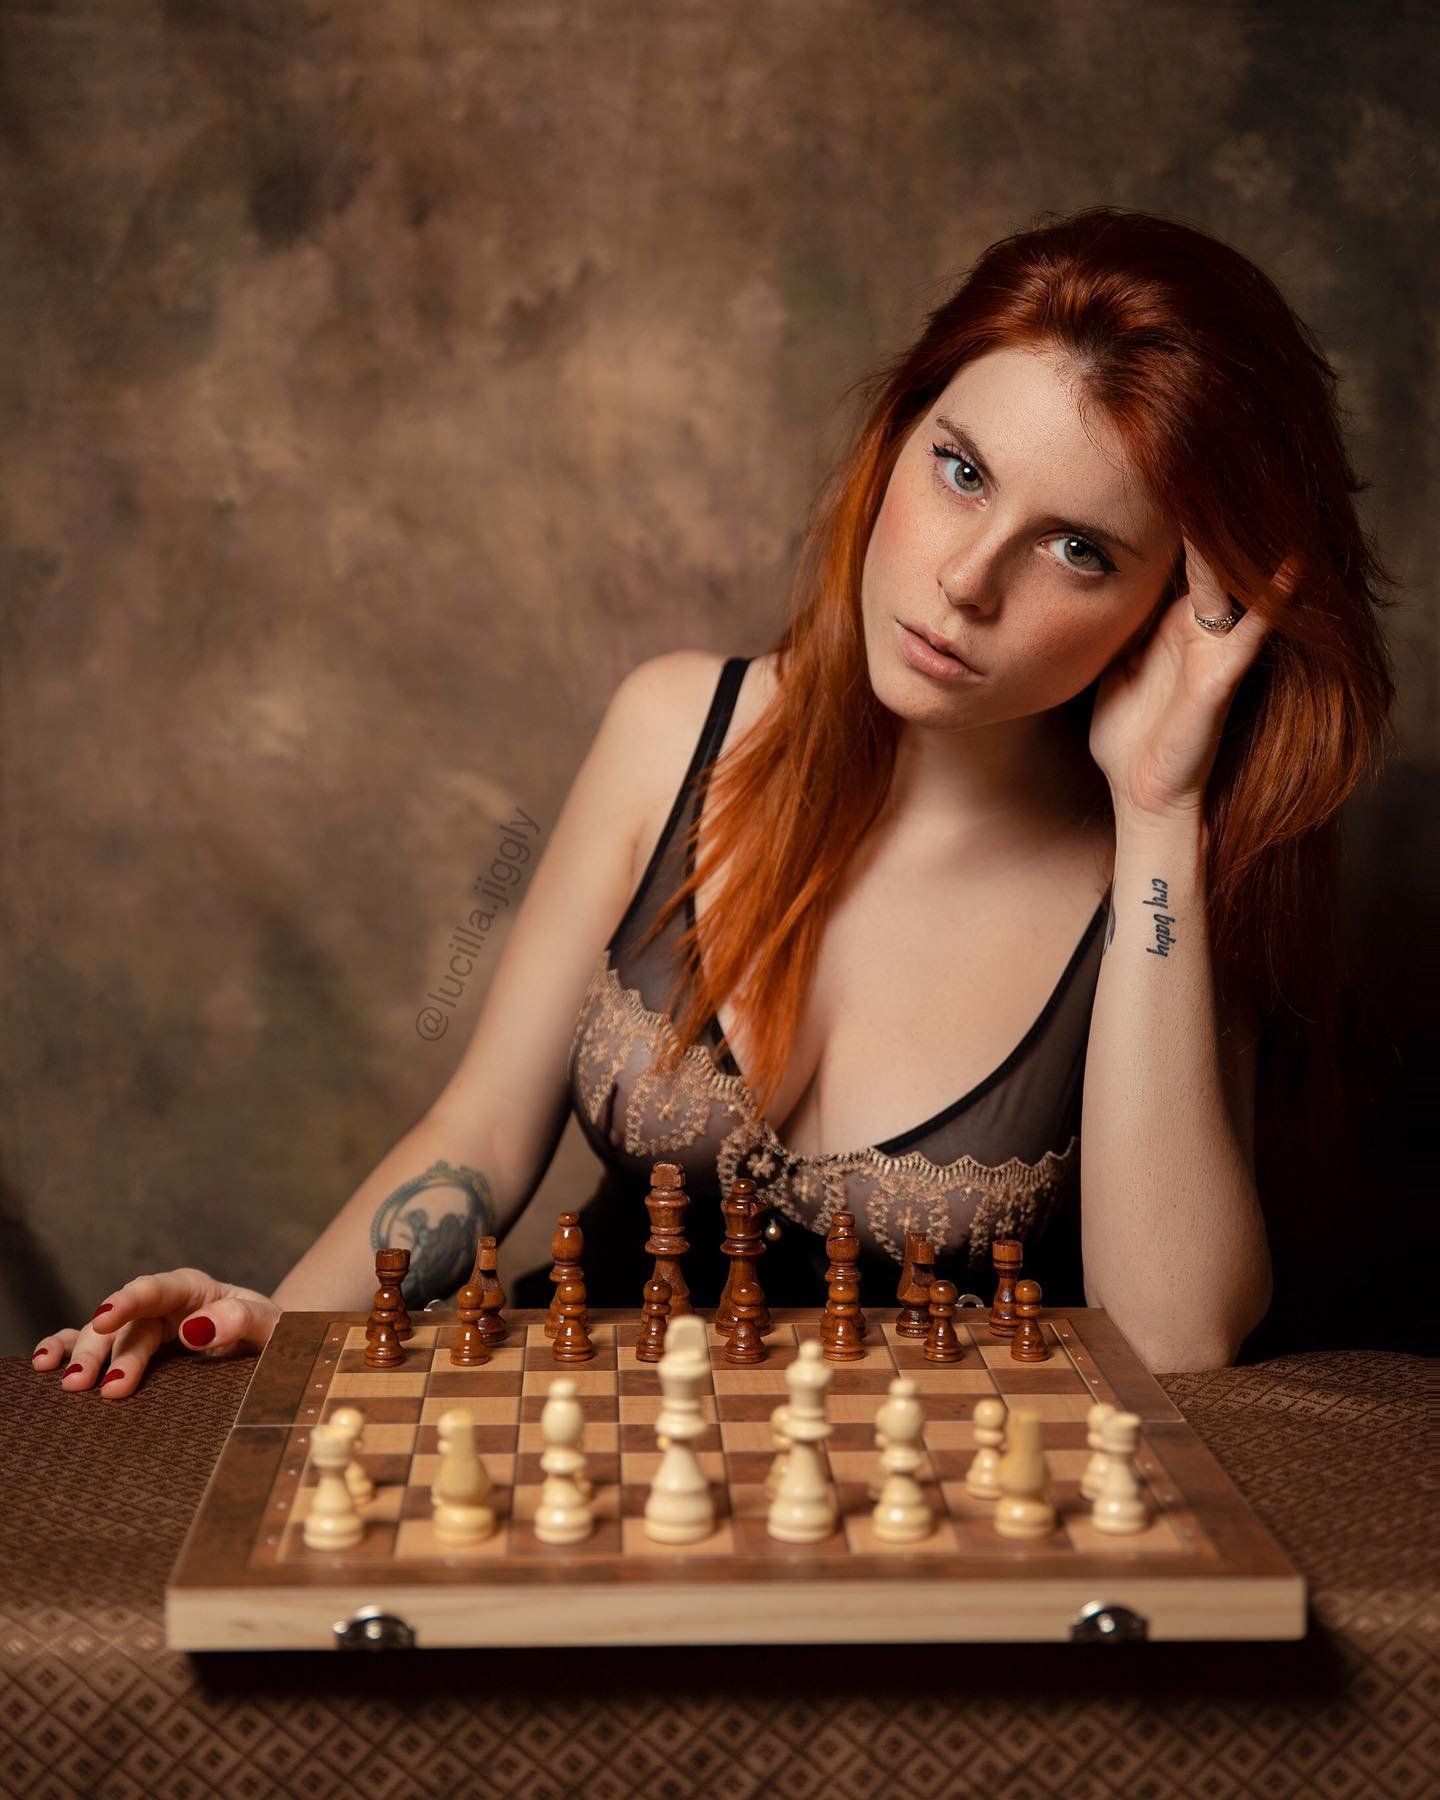 Lucilla Materazzi modelo em ensaio com tabuleiro de xadrez